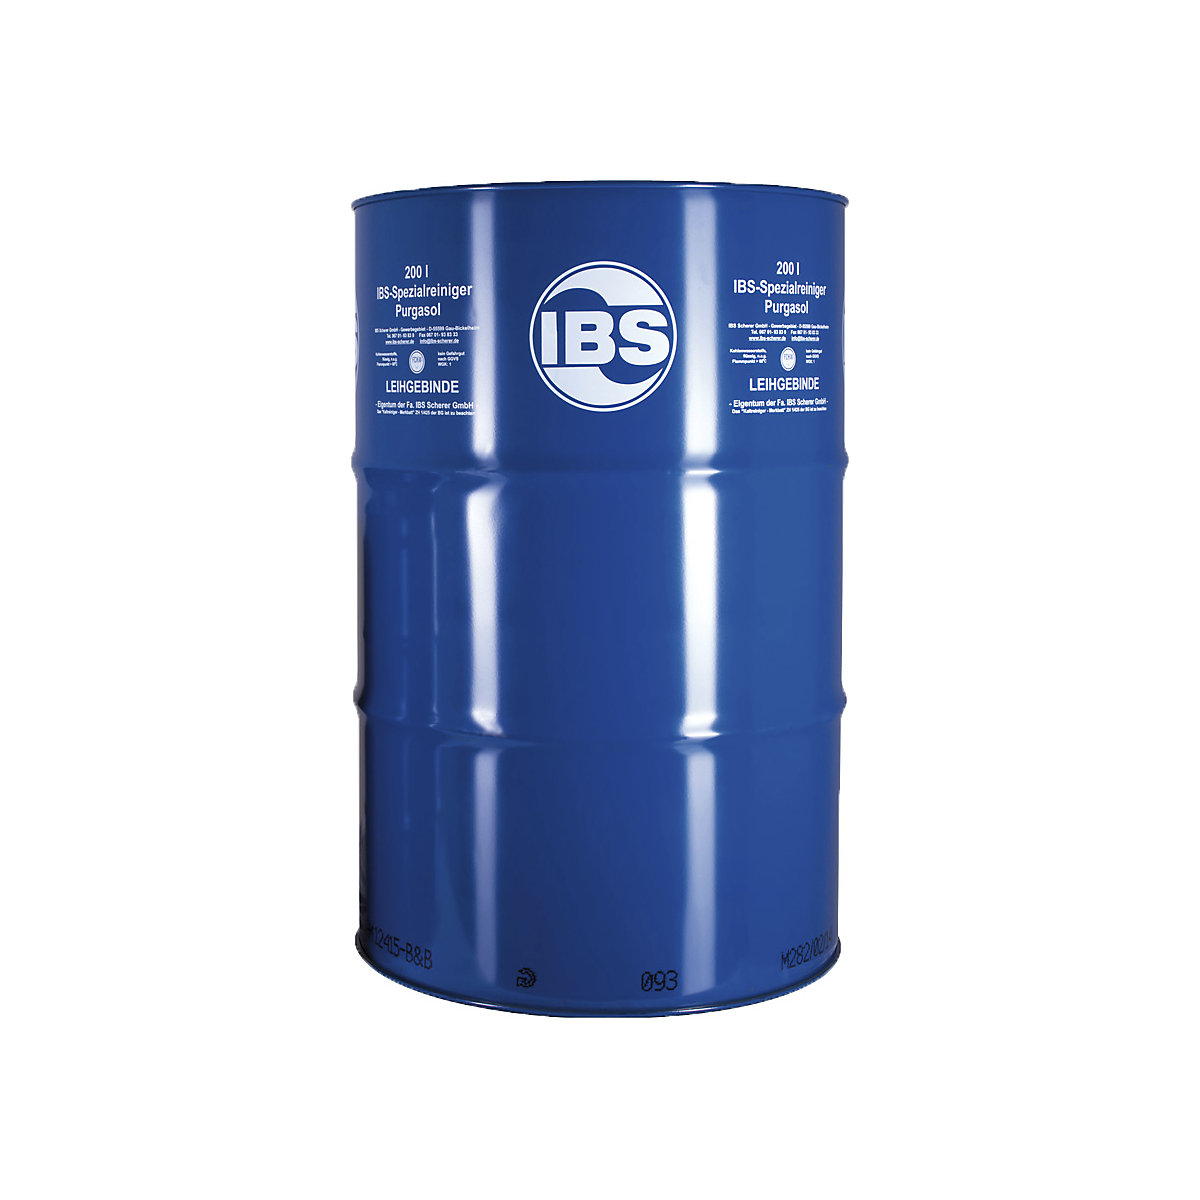 PURGASOL speciális tisztítószer – IBS Scherer, olajos és zsíros szennyeződésekhez, űrtartalom 200 l-2